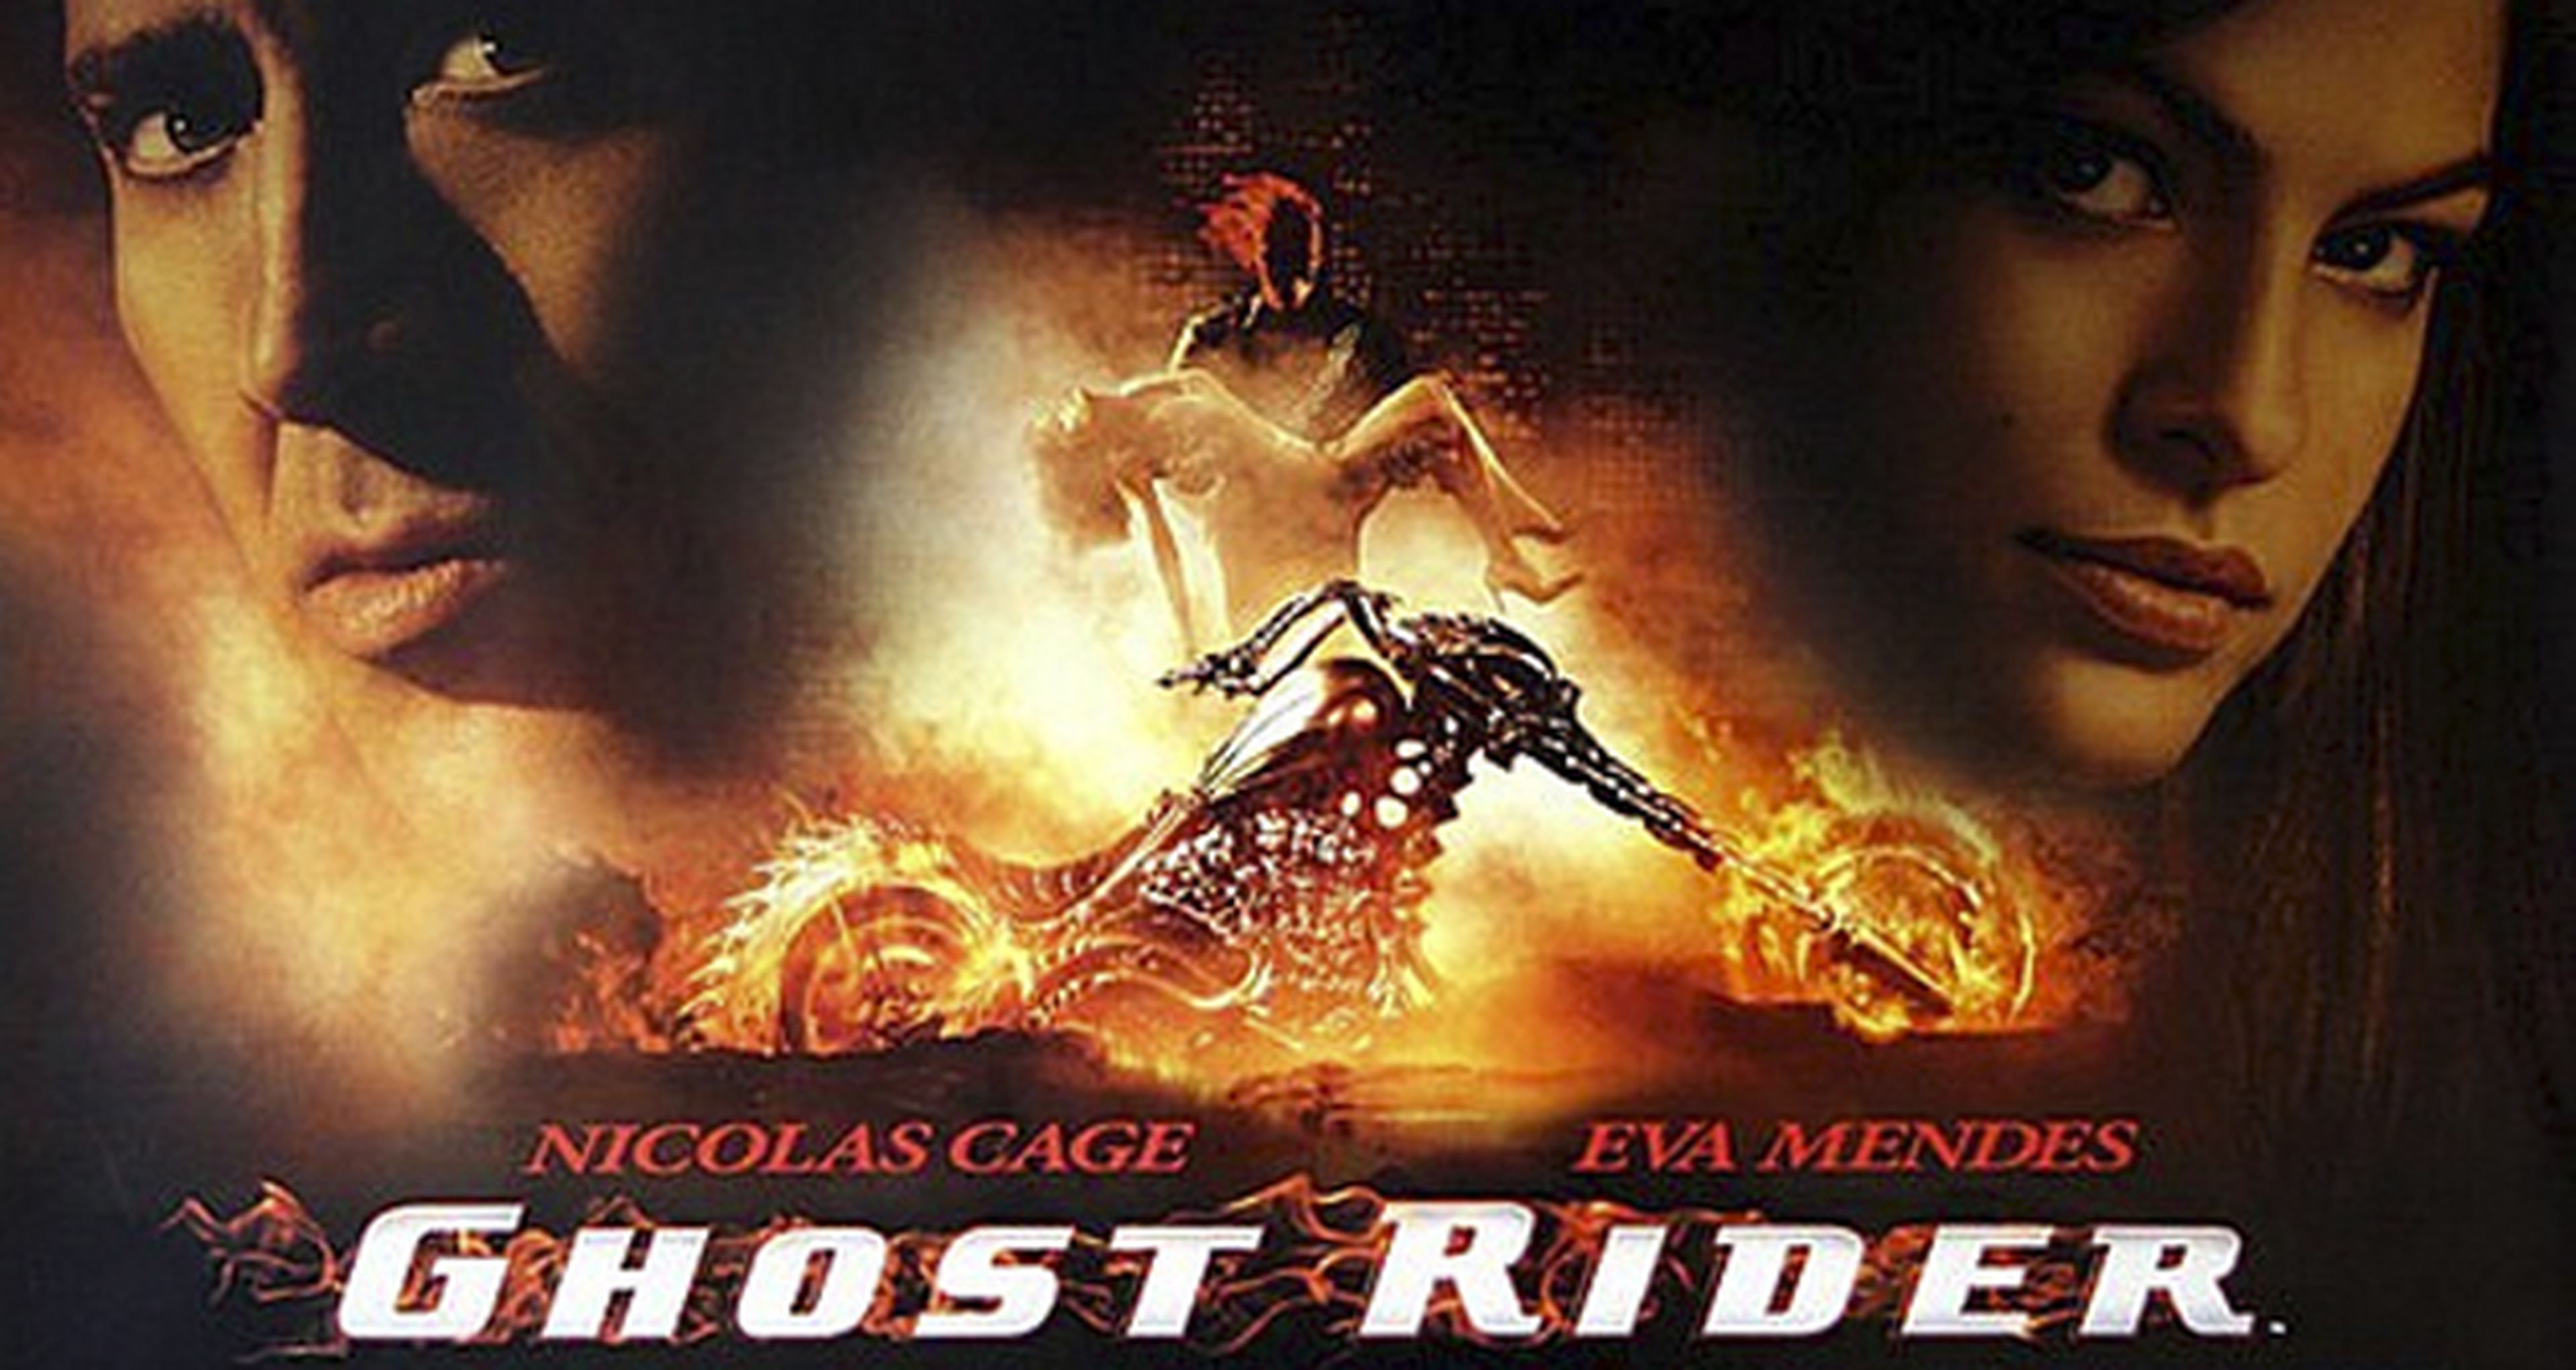 Cine de superhéroes: crítica de Ghost Rider: El motorista fantasma